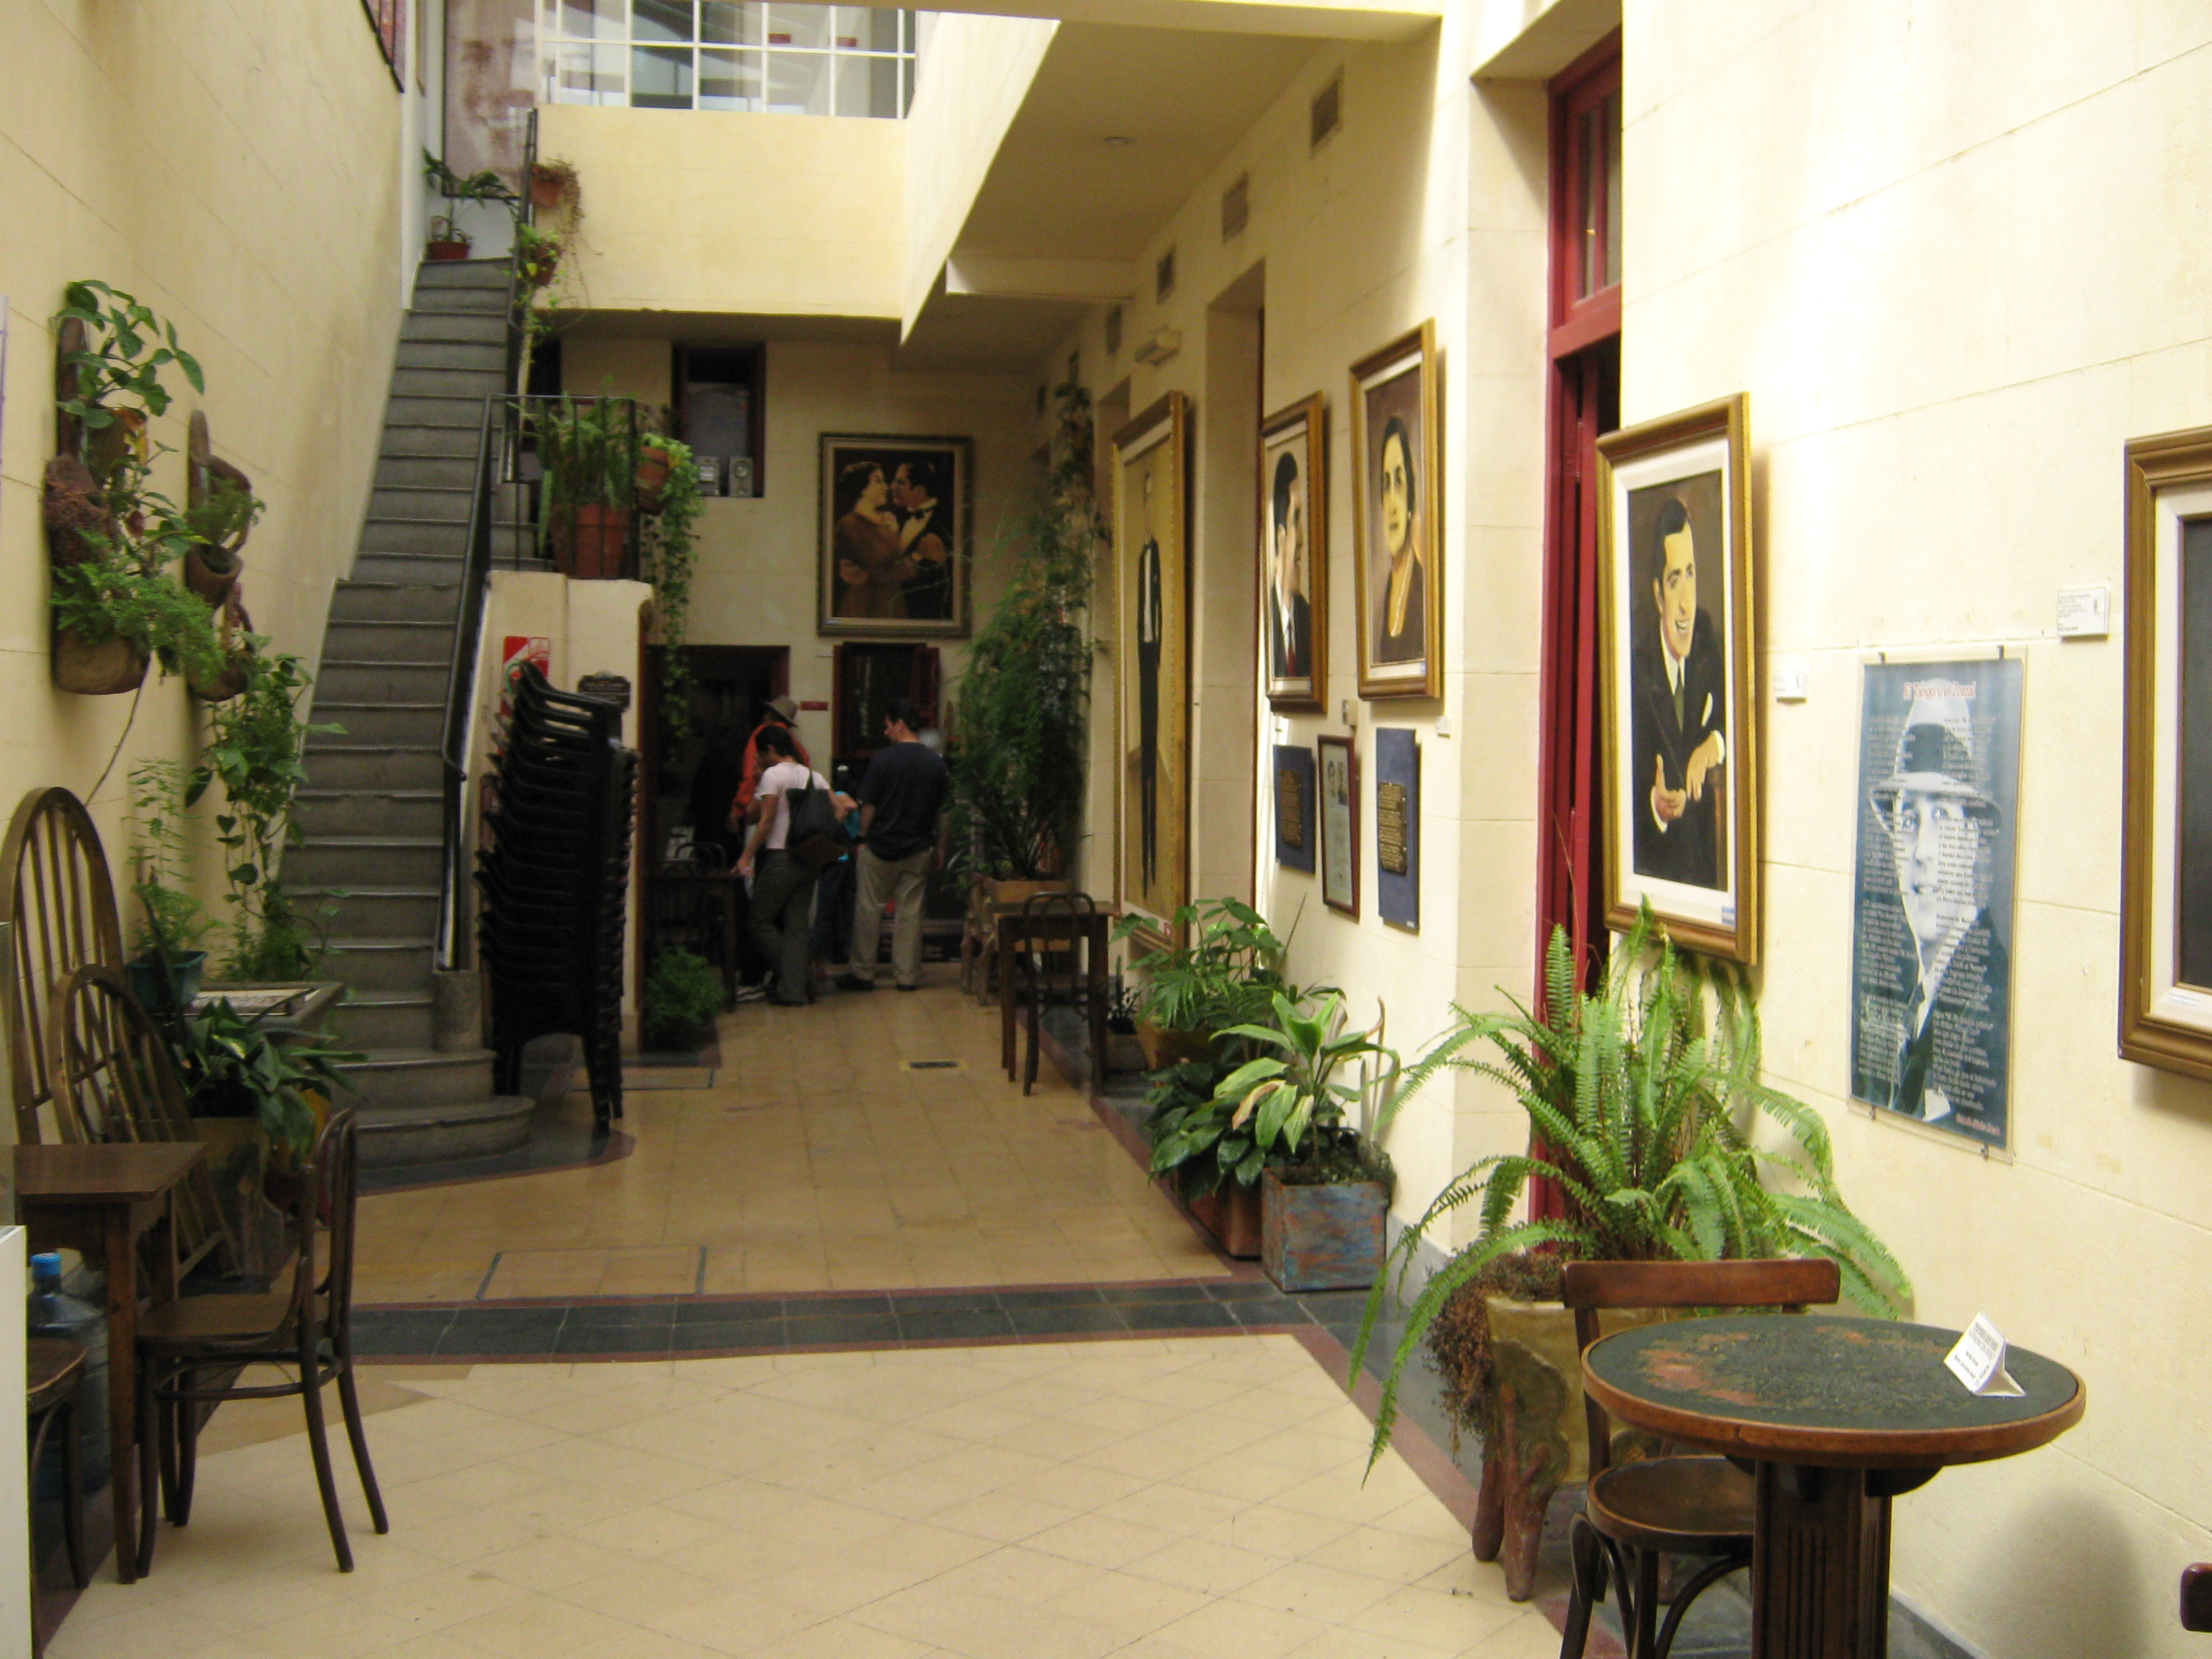 Museo Casa Carlos Gardel - Oil Exhibition